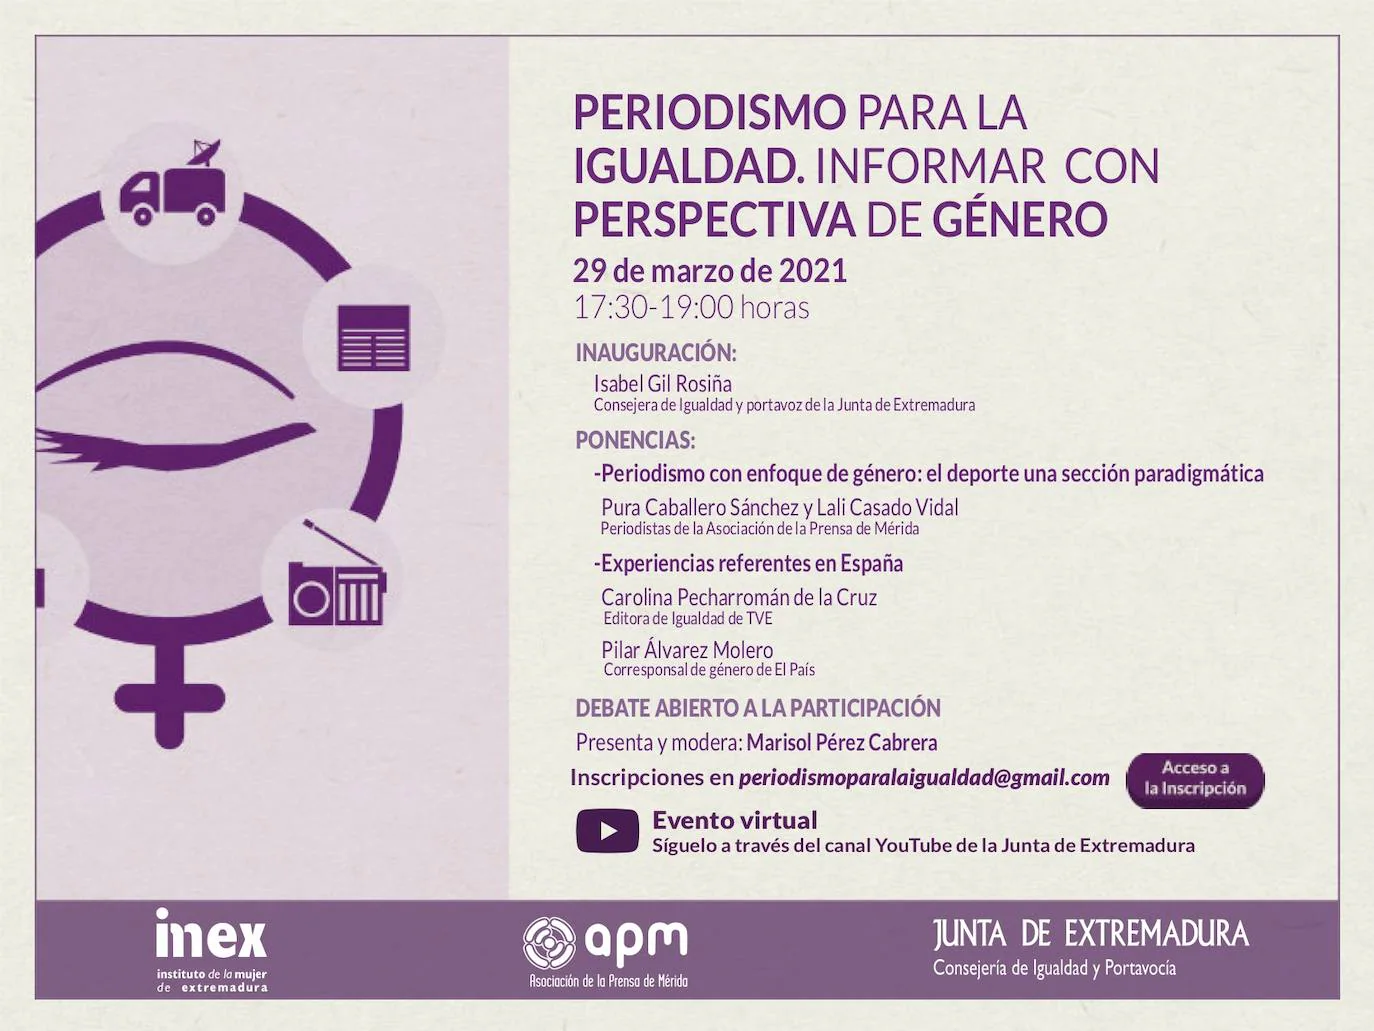 La Asociación de la prensa de Mérida organiza una jornada virtual sobre 'Periodismo para la Igualdad. Informar con perspectiva de género'